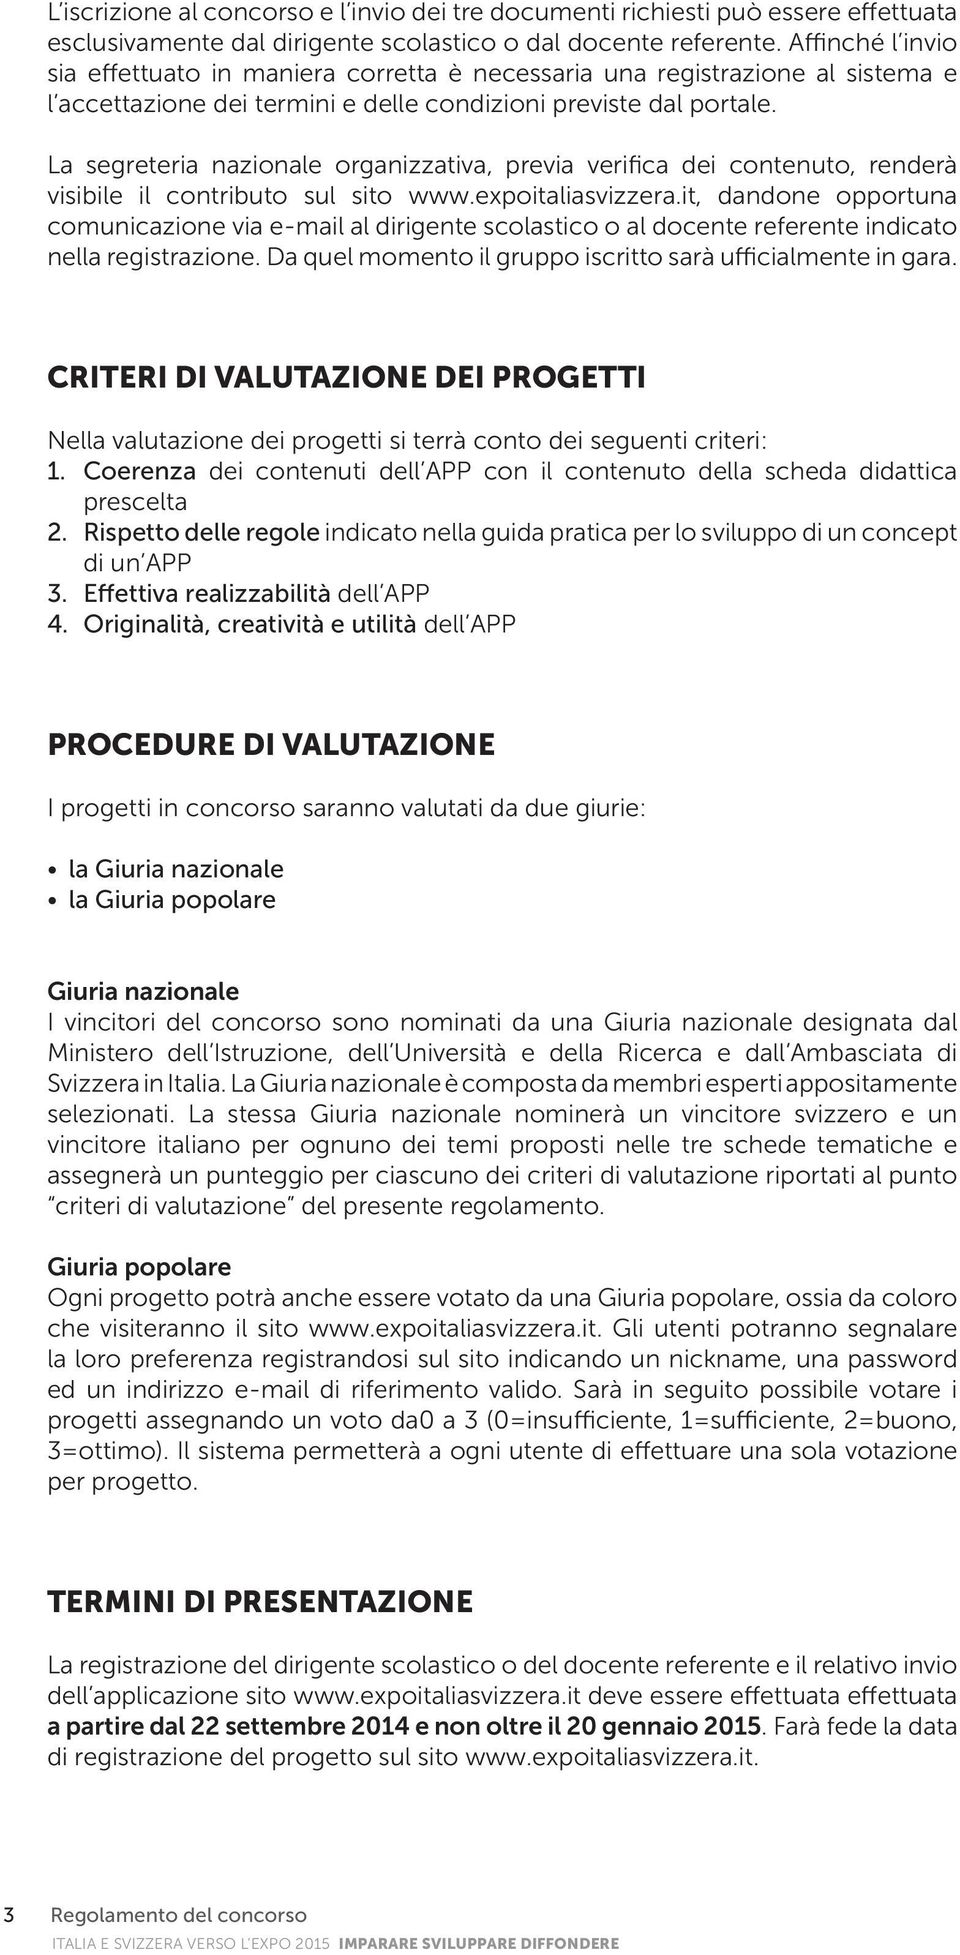 La segreteria nazionale organizzativa, previa verifica dei contenuto, renderà visibile il contributo sul sito www.expoitaliasvizzera.